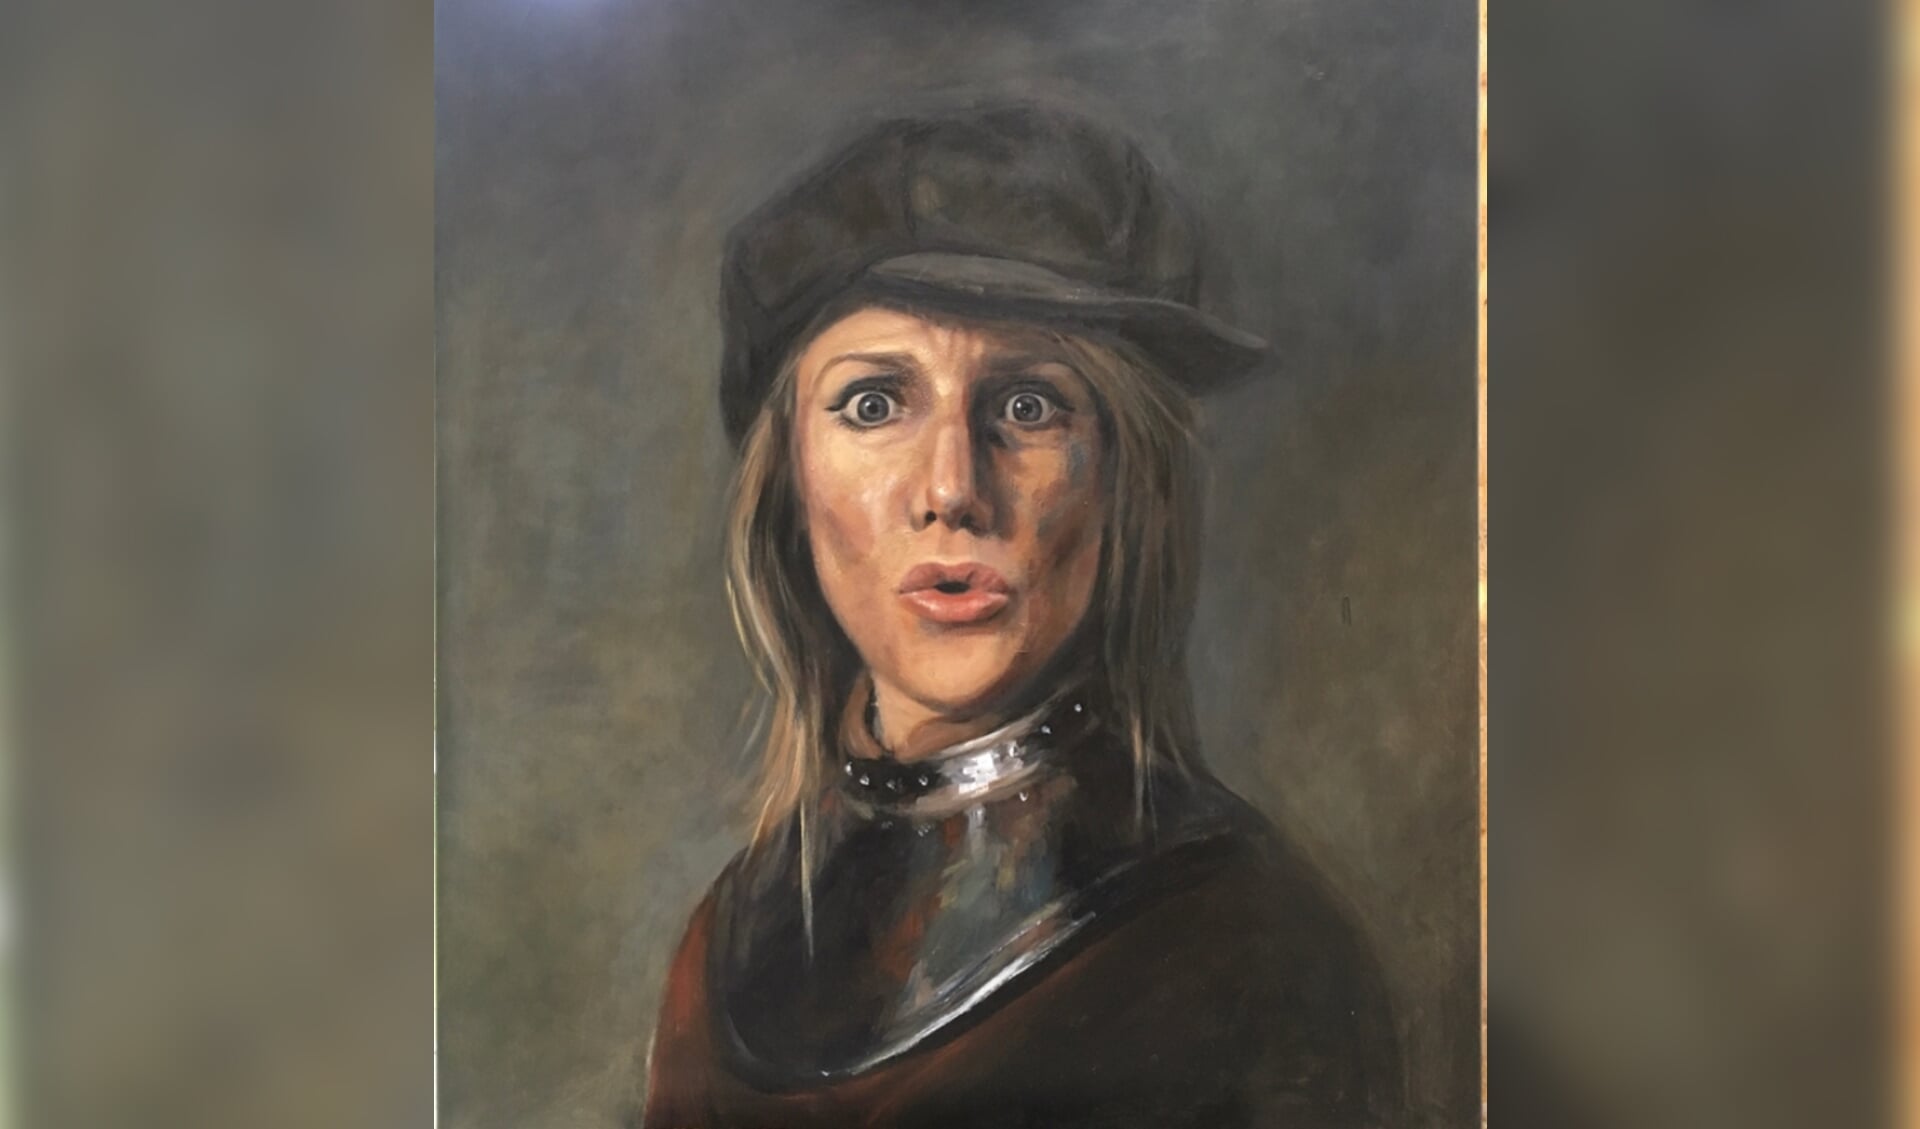 Haar zelfportret in de grote Rembrandtwedstrijd.